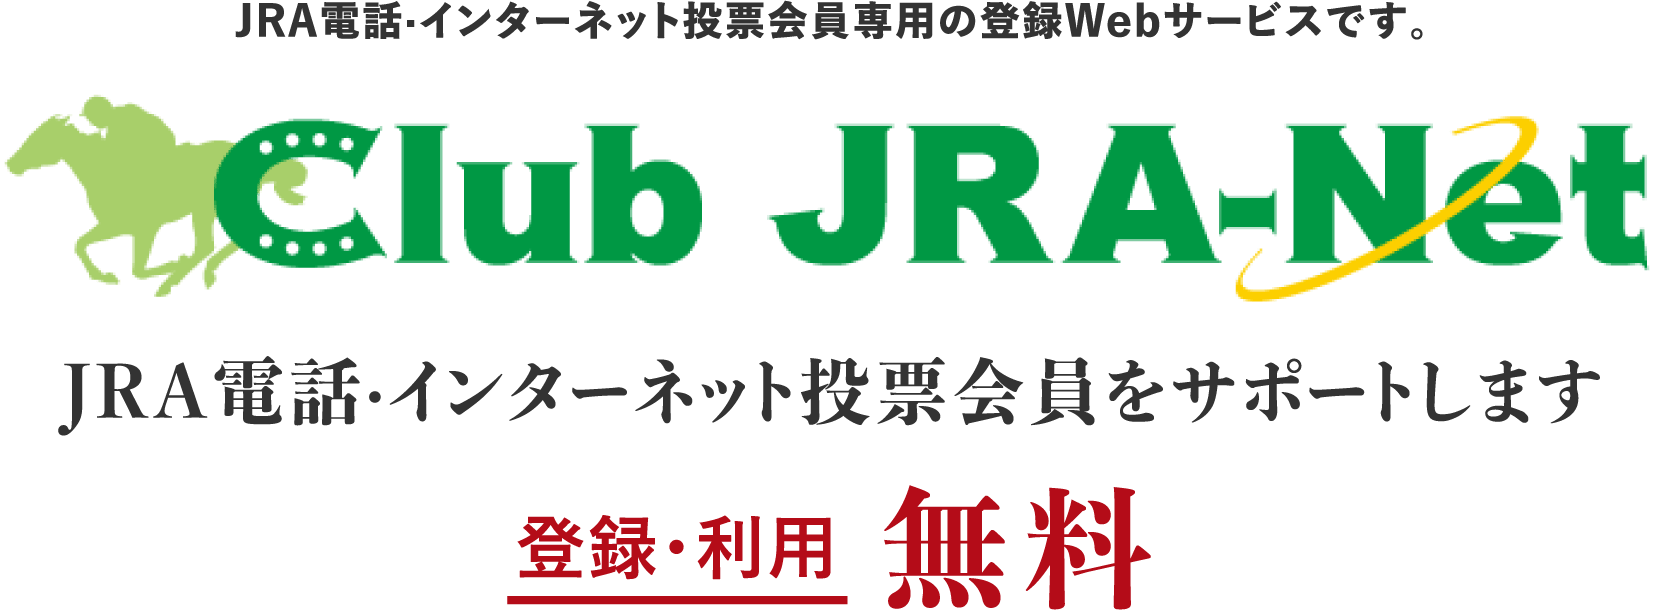 JRAdbEC^[lbg[p̓o^WebT[rXłBClub JRA-Net JRAdbEC^[lbg[T|[g܂Bo^Ep 